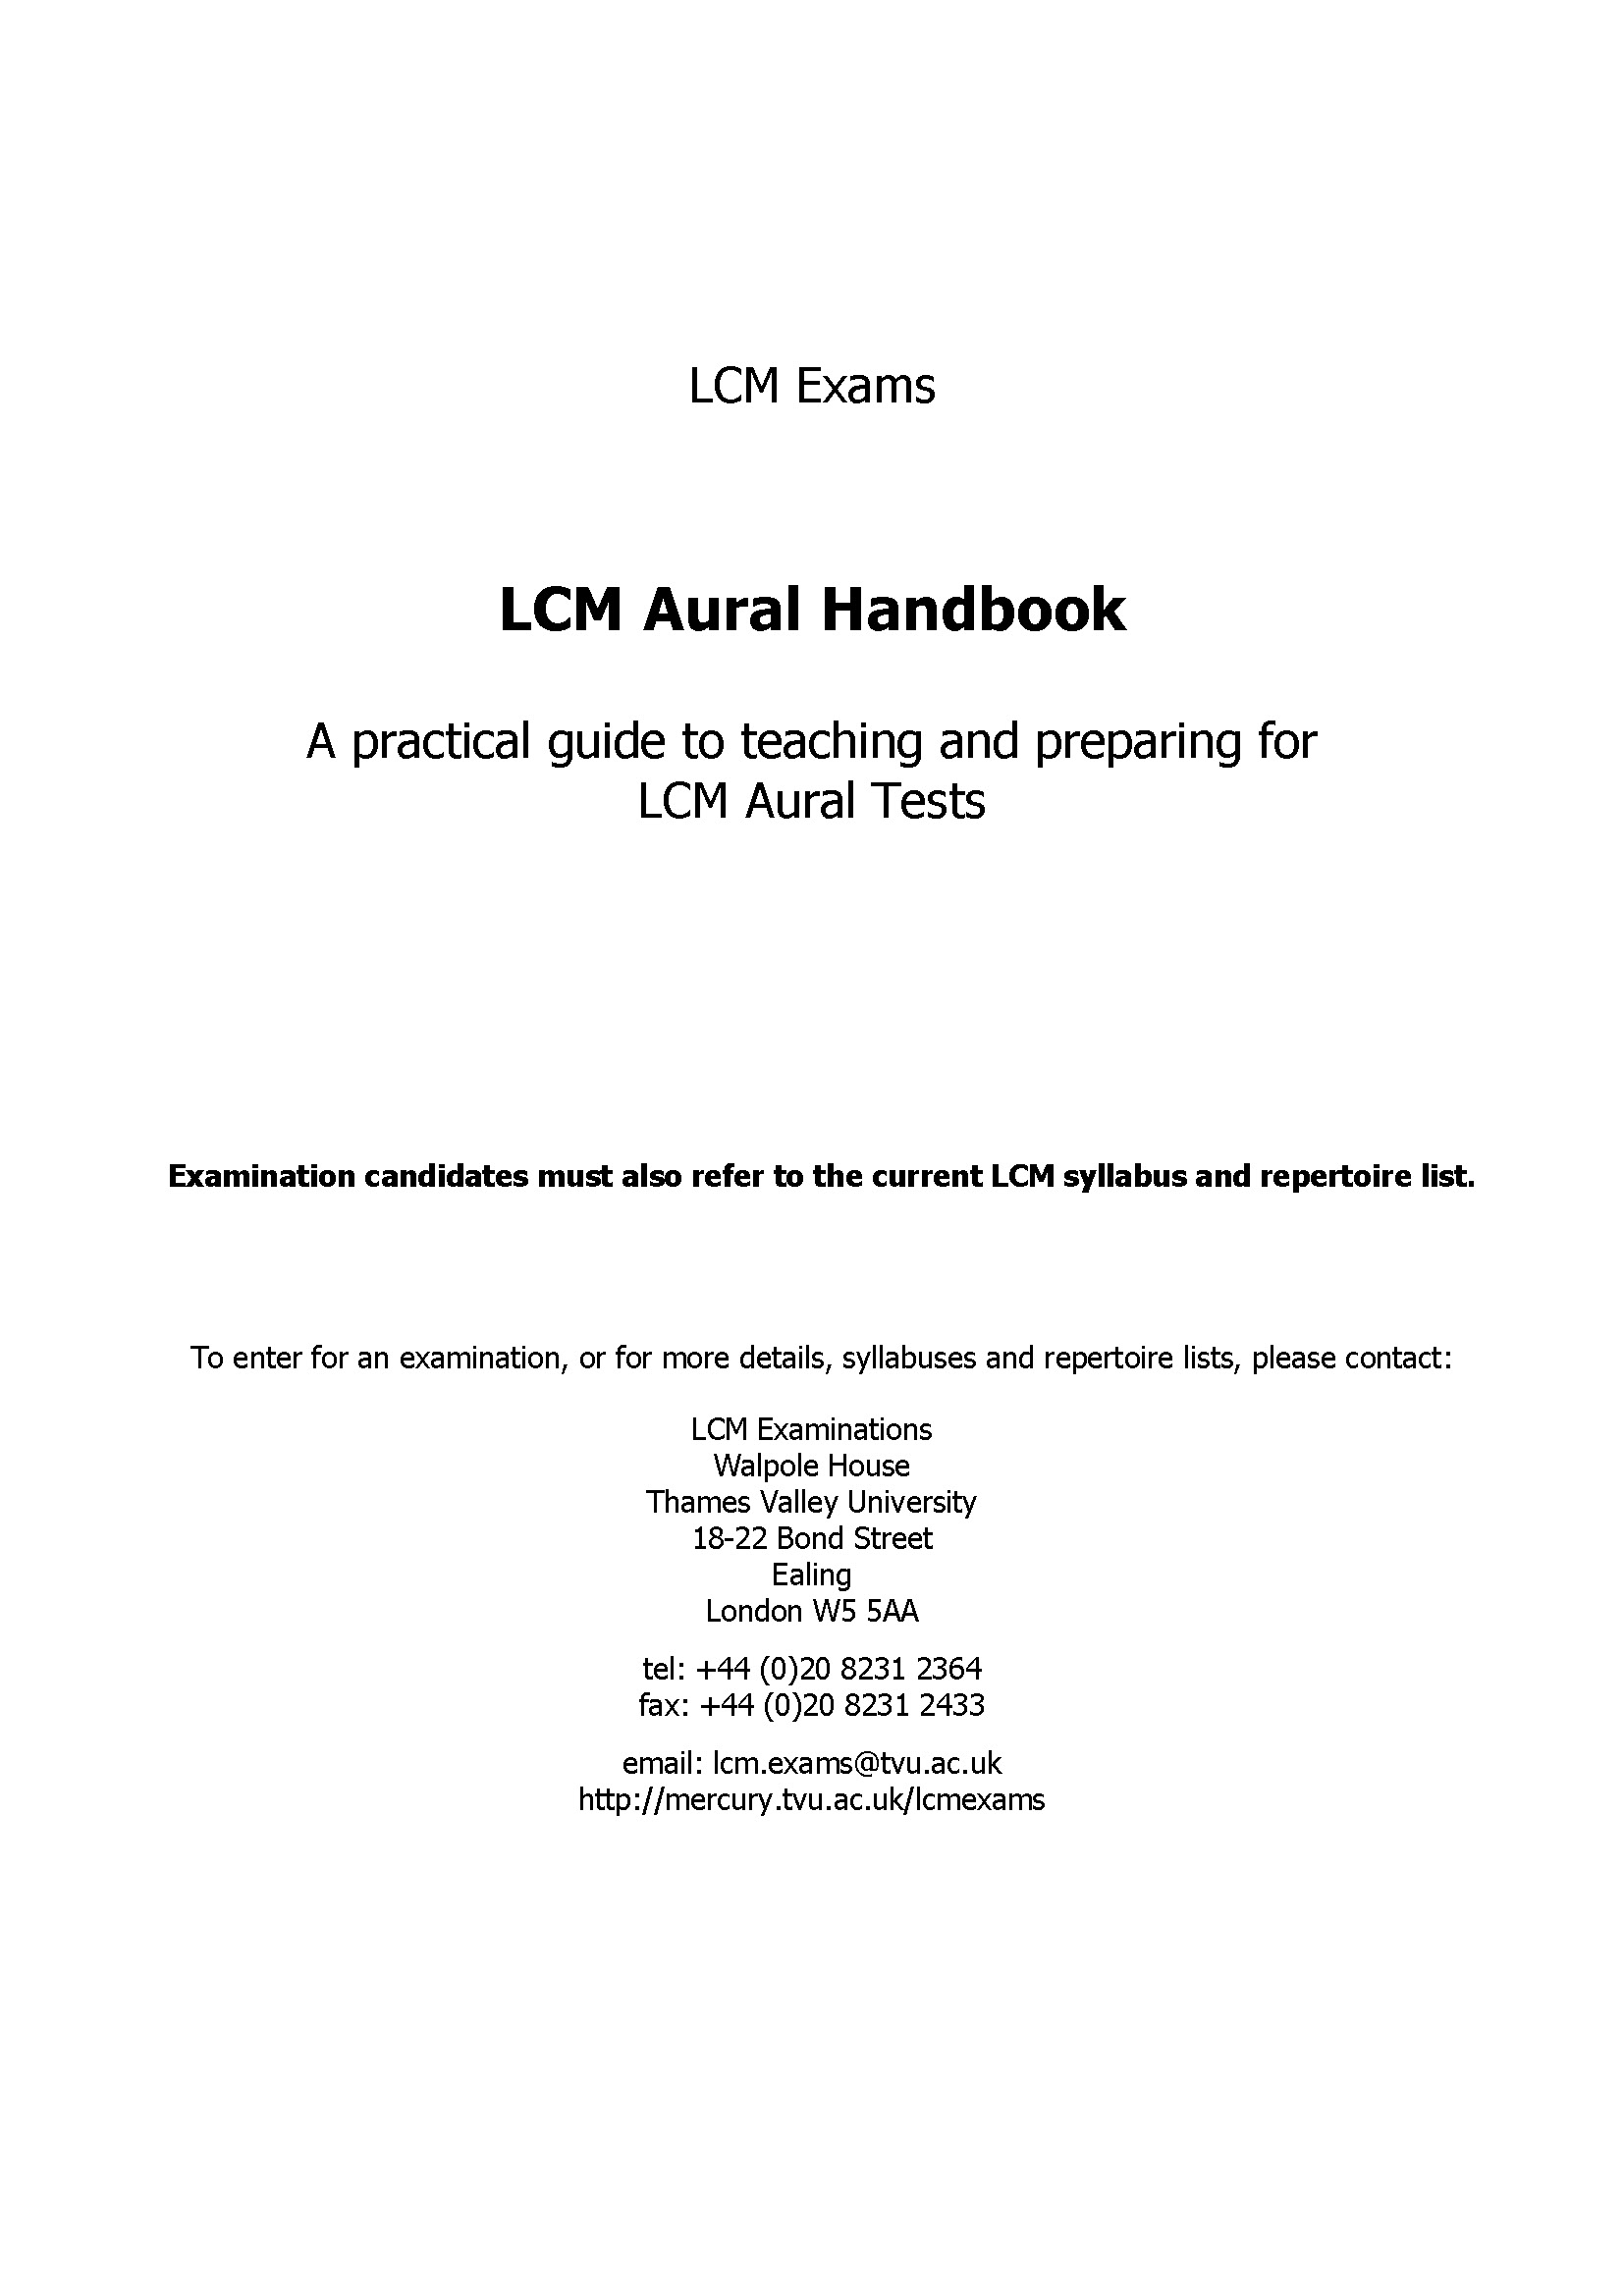 LCM Aural Handbook book cover